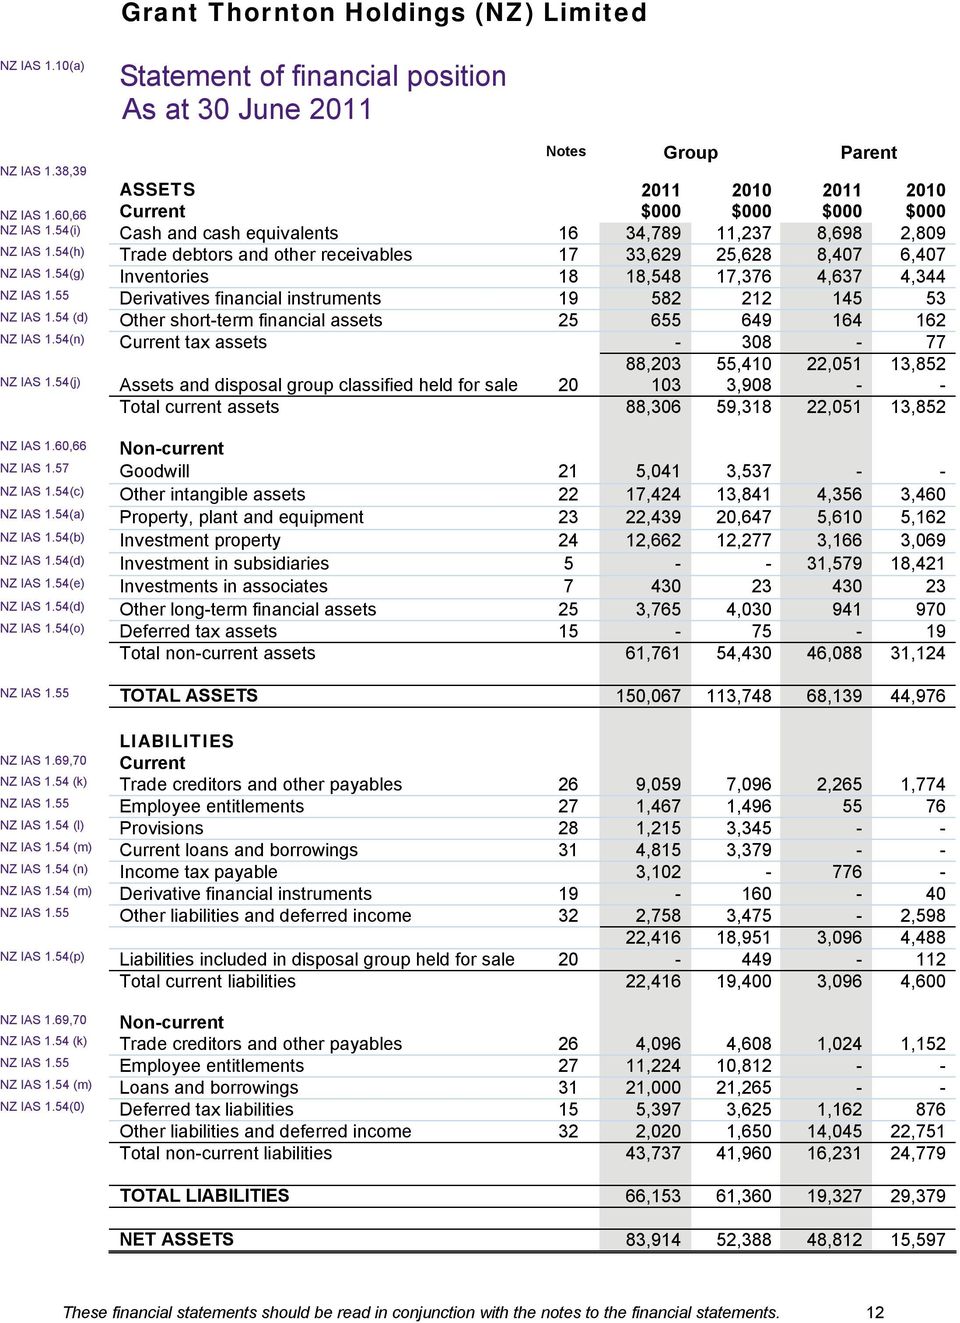 54 (d) Other short-term financial assets 25 655 649 164 162 NZ IAS 1.54(n) Current tax assets - 308-77 88,203 55,410 22,051 13,852 NZ IAS 1.